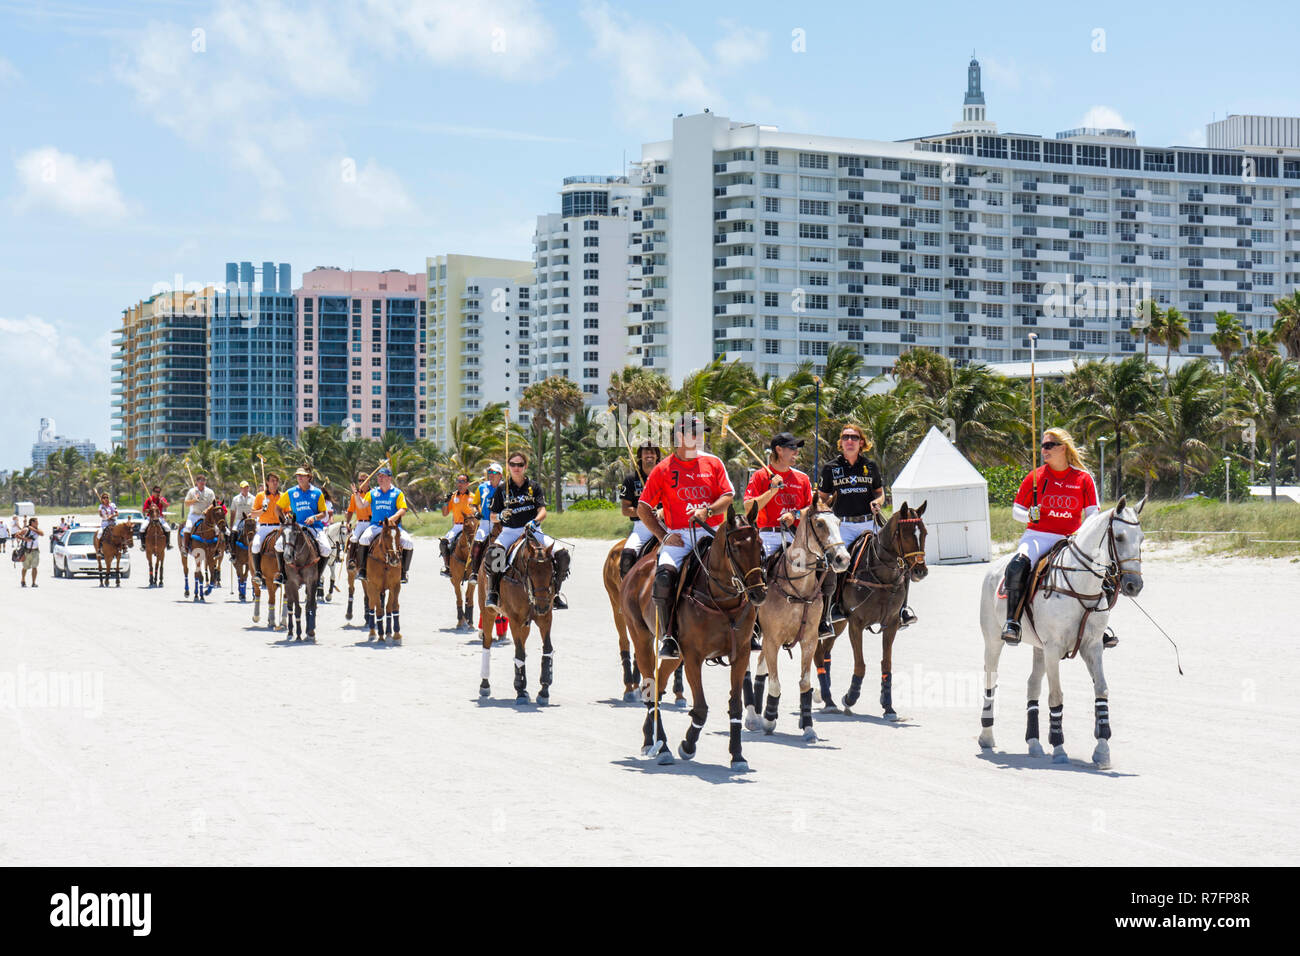 Miami Beach Florida,Polo World Cup matches,sport,torneo,campo di sabbia equestre,fronte oceano,edificio,grattacieli grattacieli di alto livello edificio Foto Stock